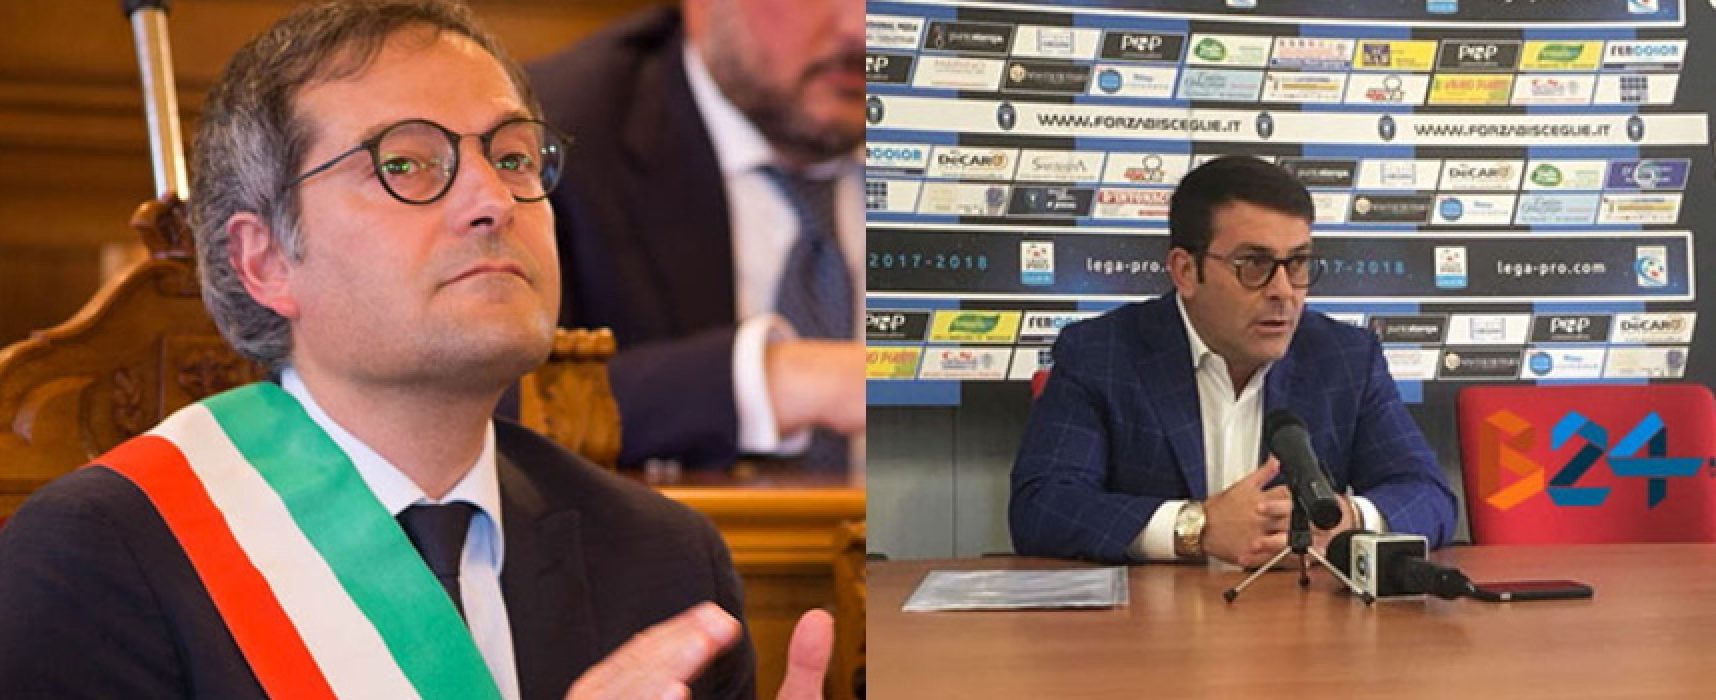 Bisceglie Calcio, Angarano su dimissioni Canonico: “Fuori luogo coinvolgere amministrazione”